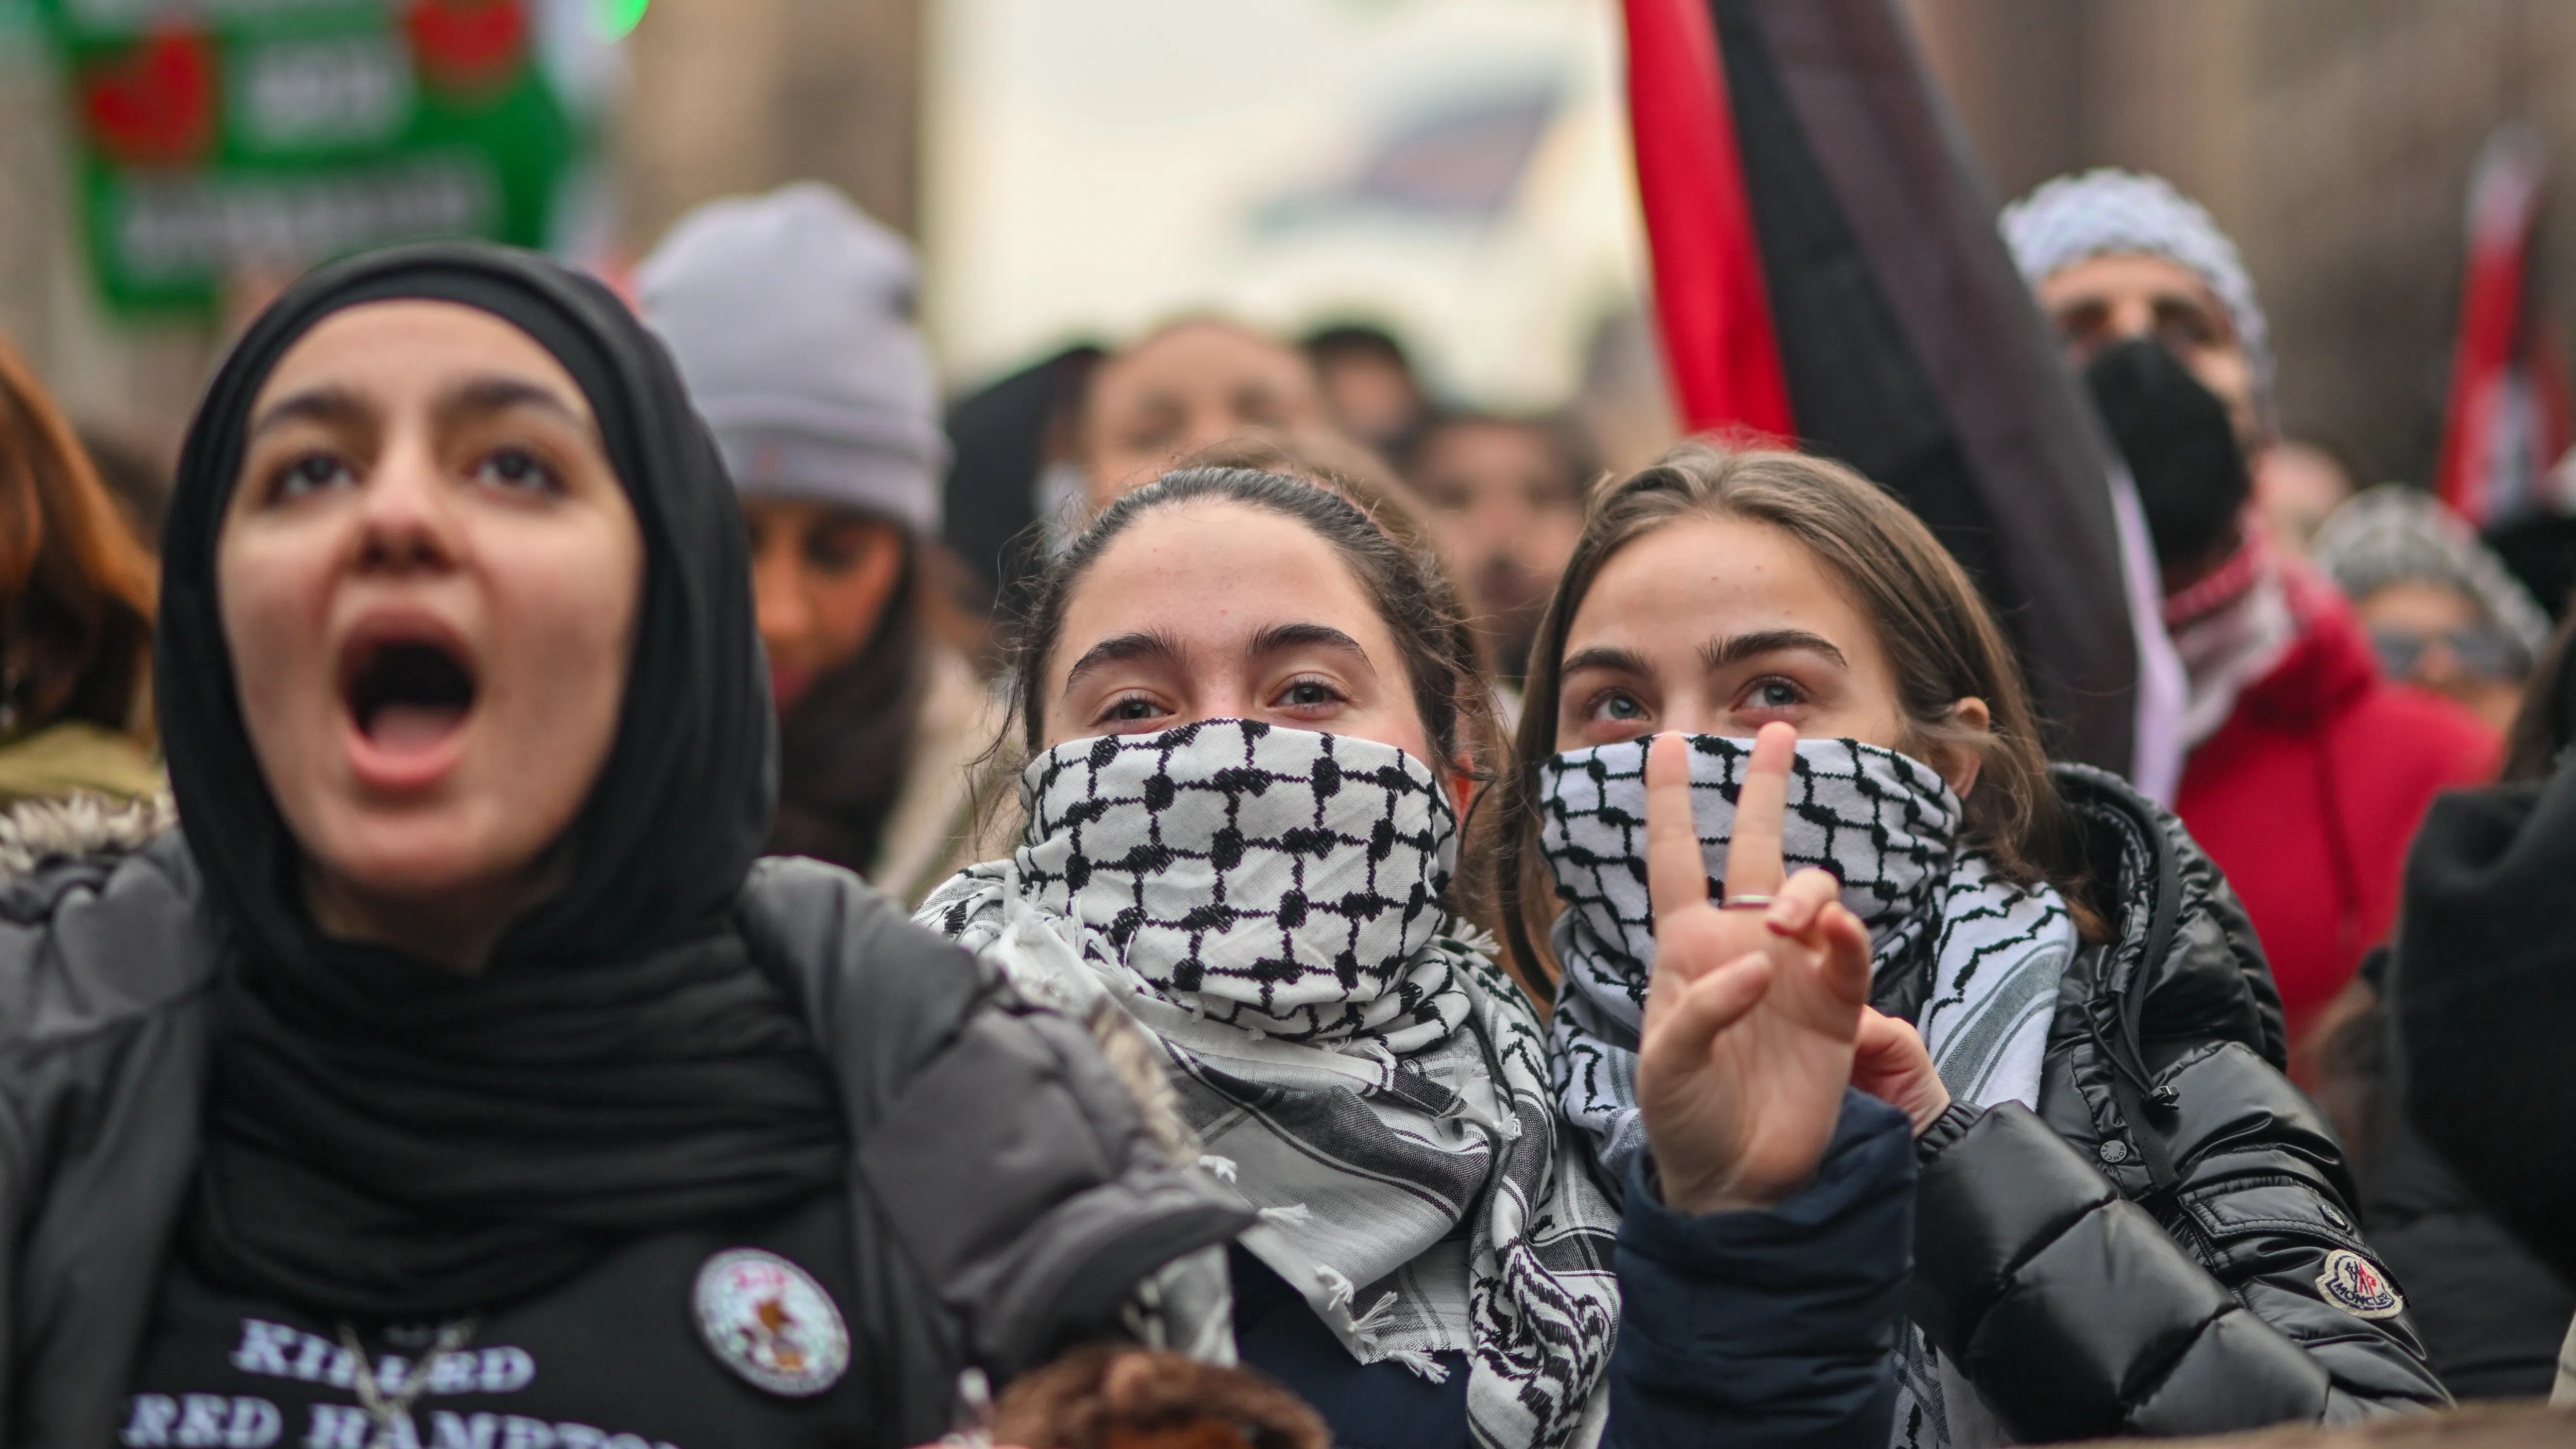 Пропалестински групи критикуват остро Google, войната в Газа продължава да разделя американските университети